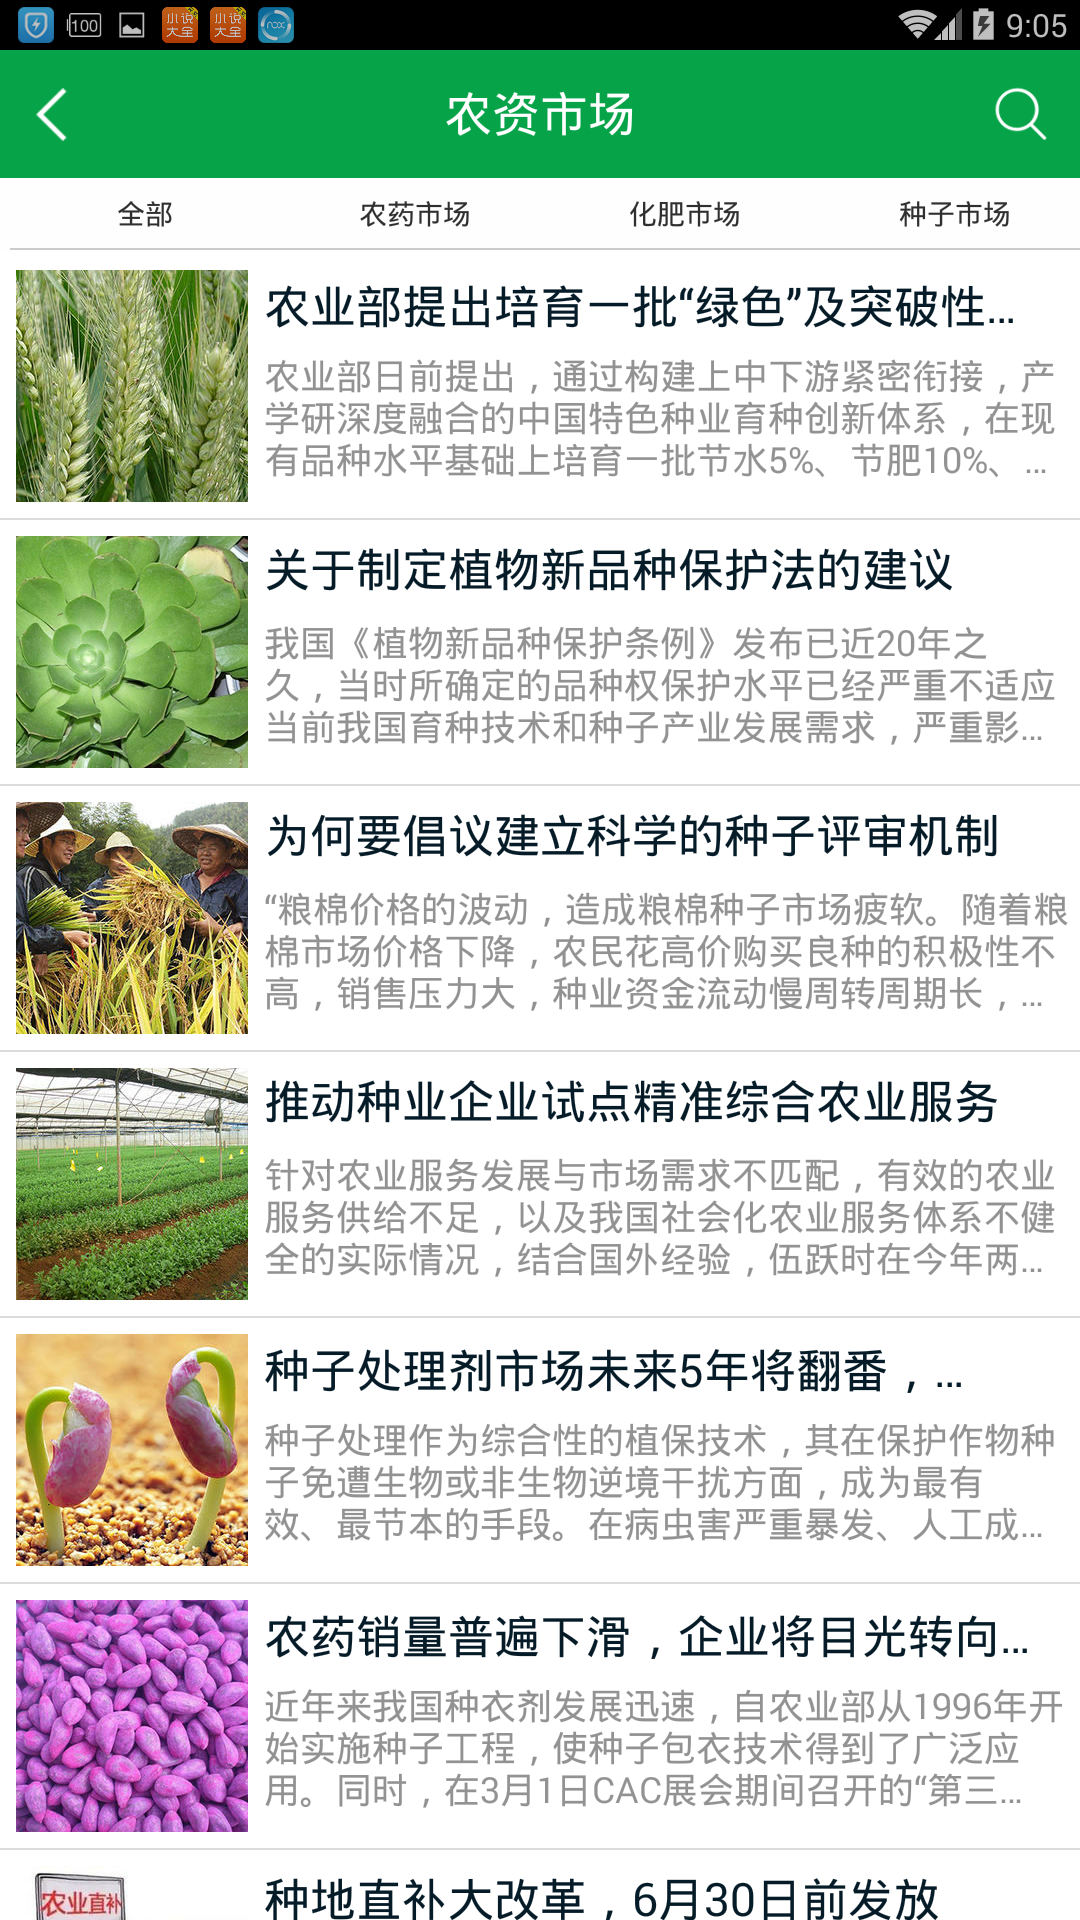 天博官方网华南农资商城正式上线催生互联网期间农业新形式(图3)